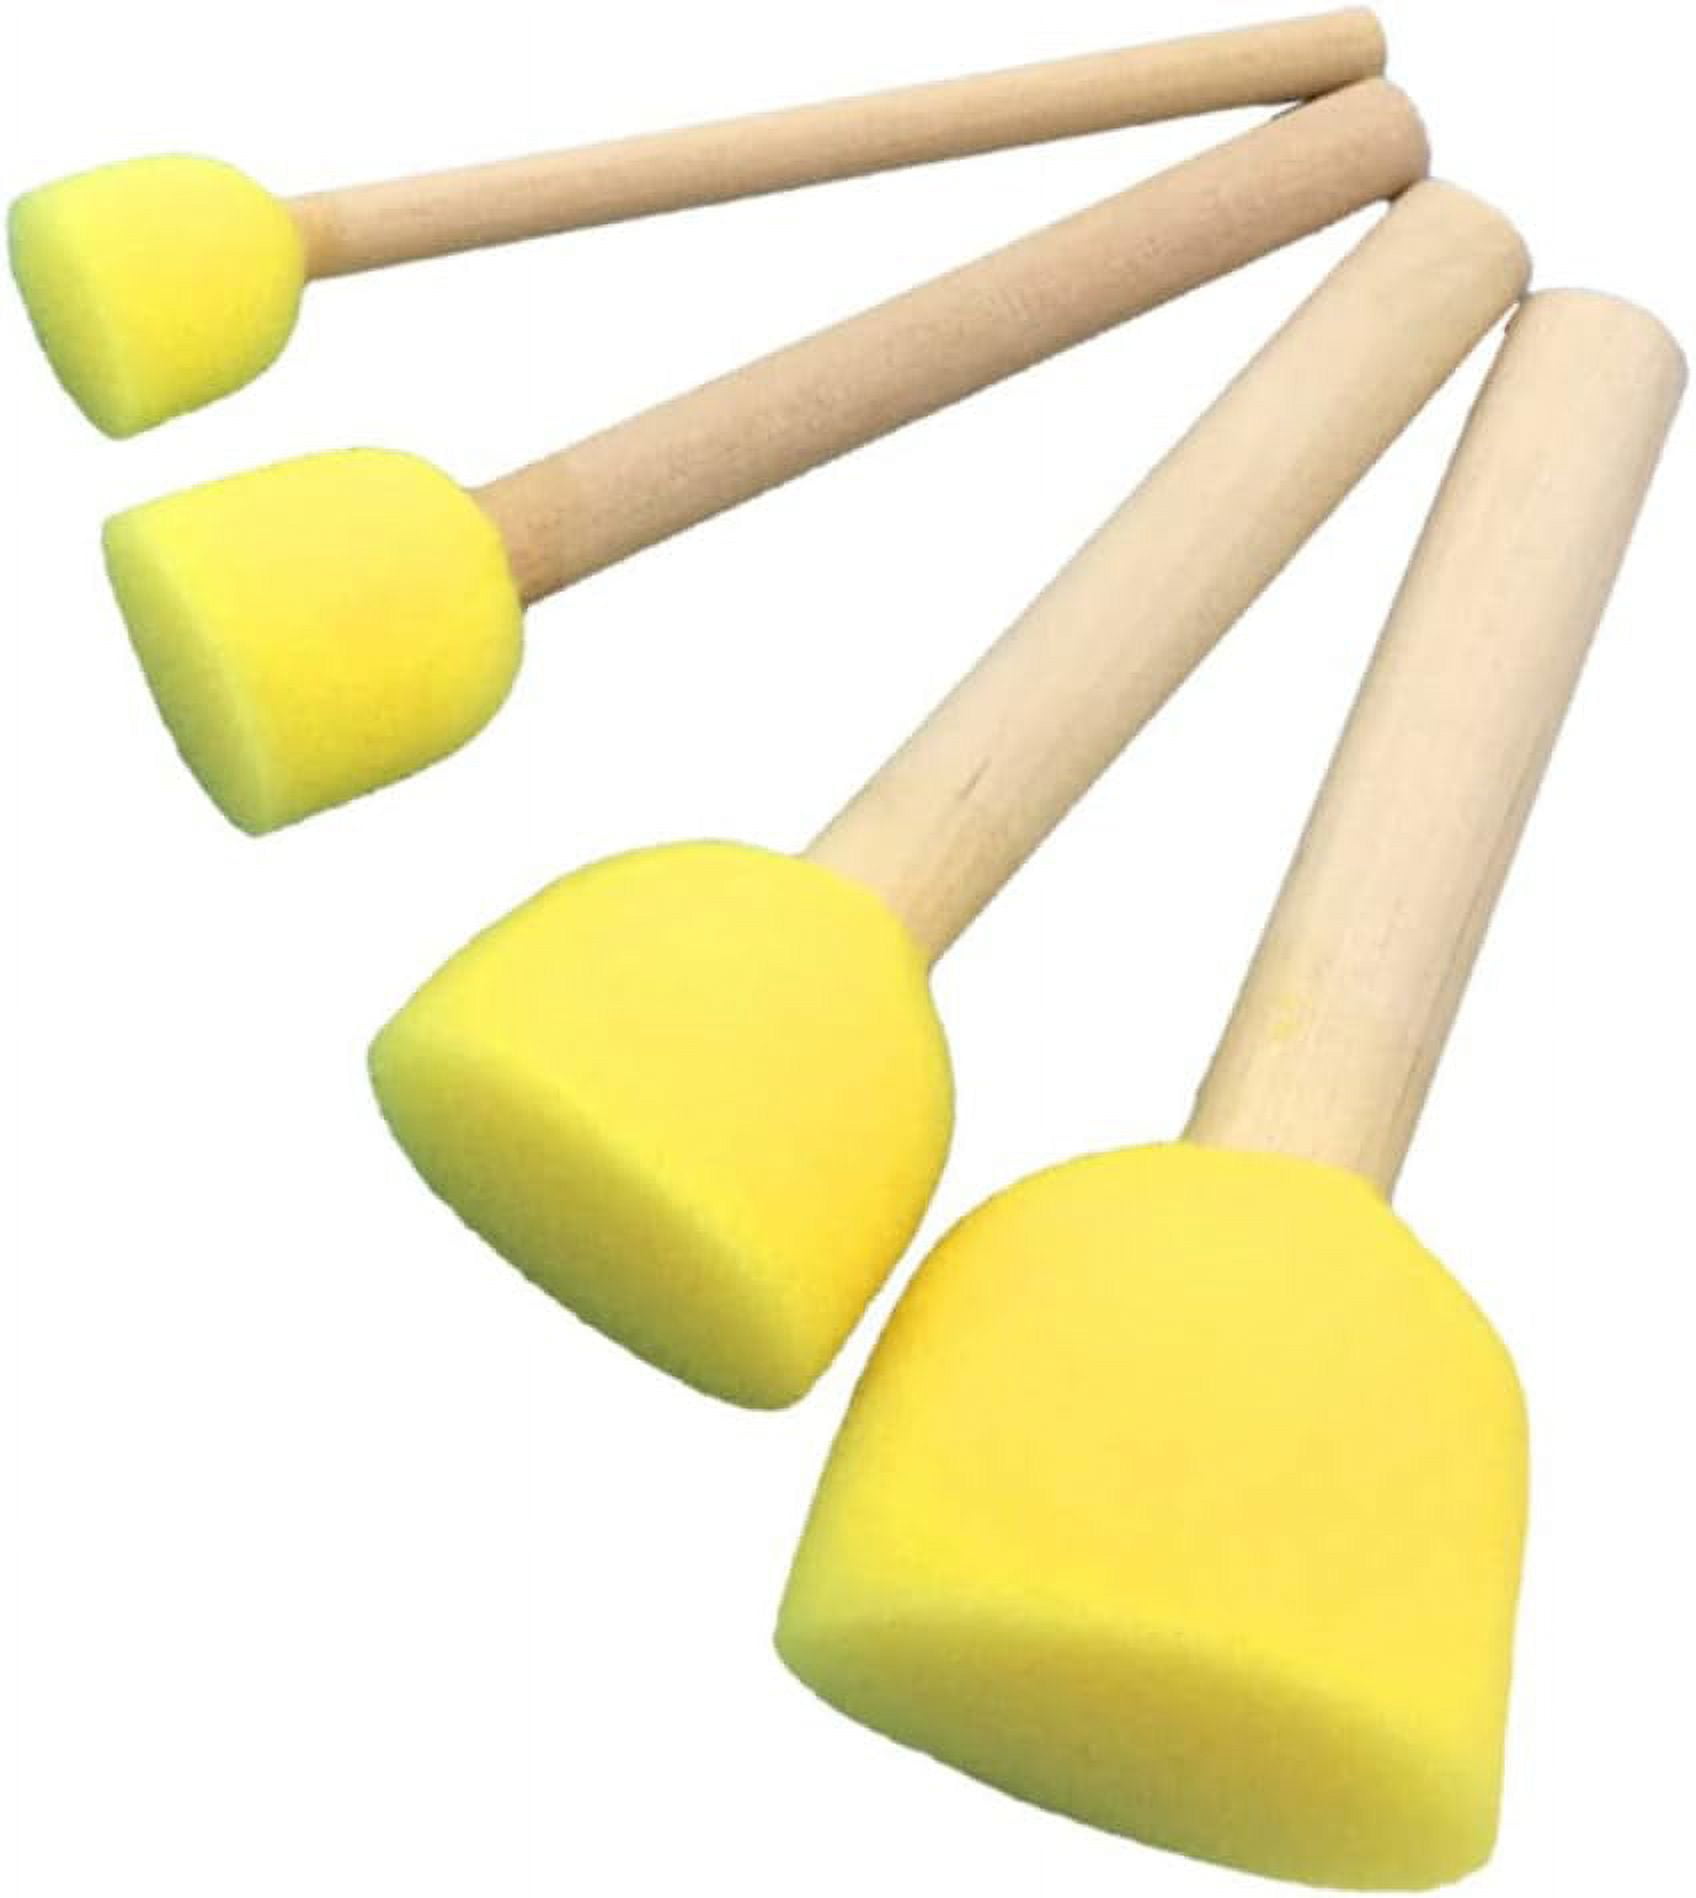 Sponge Stippler Set 10/Pkg